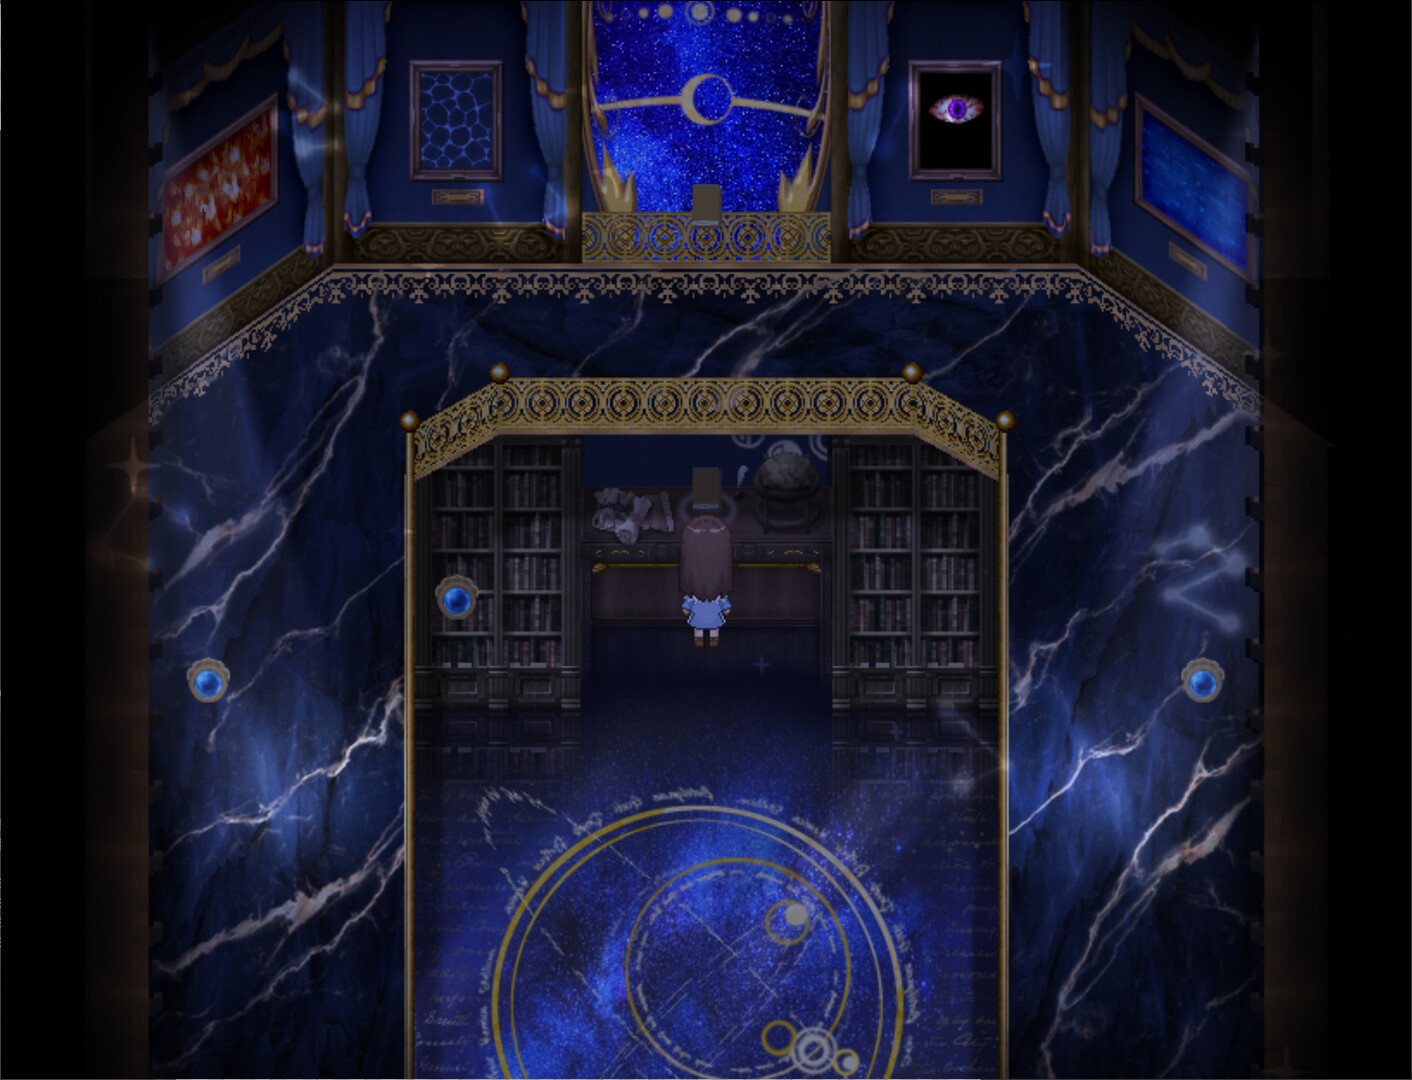 《幻夜圖書館》Steam頁面上線 今年年內發售